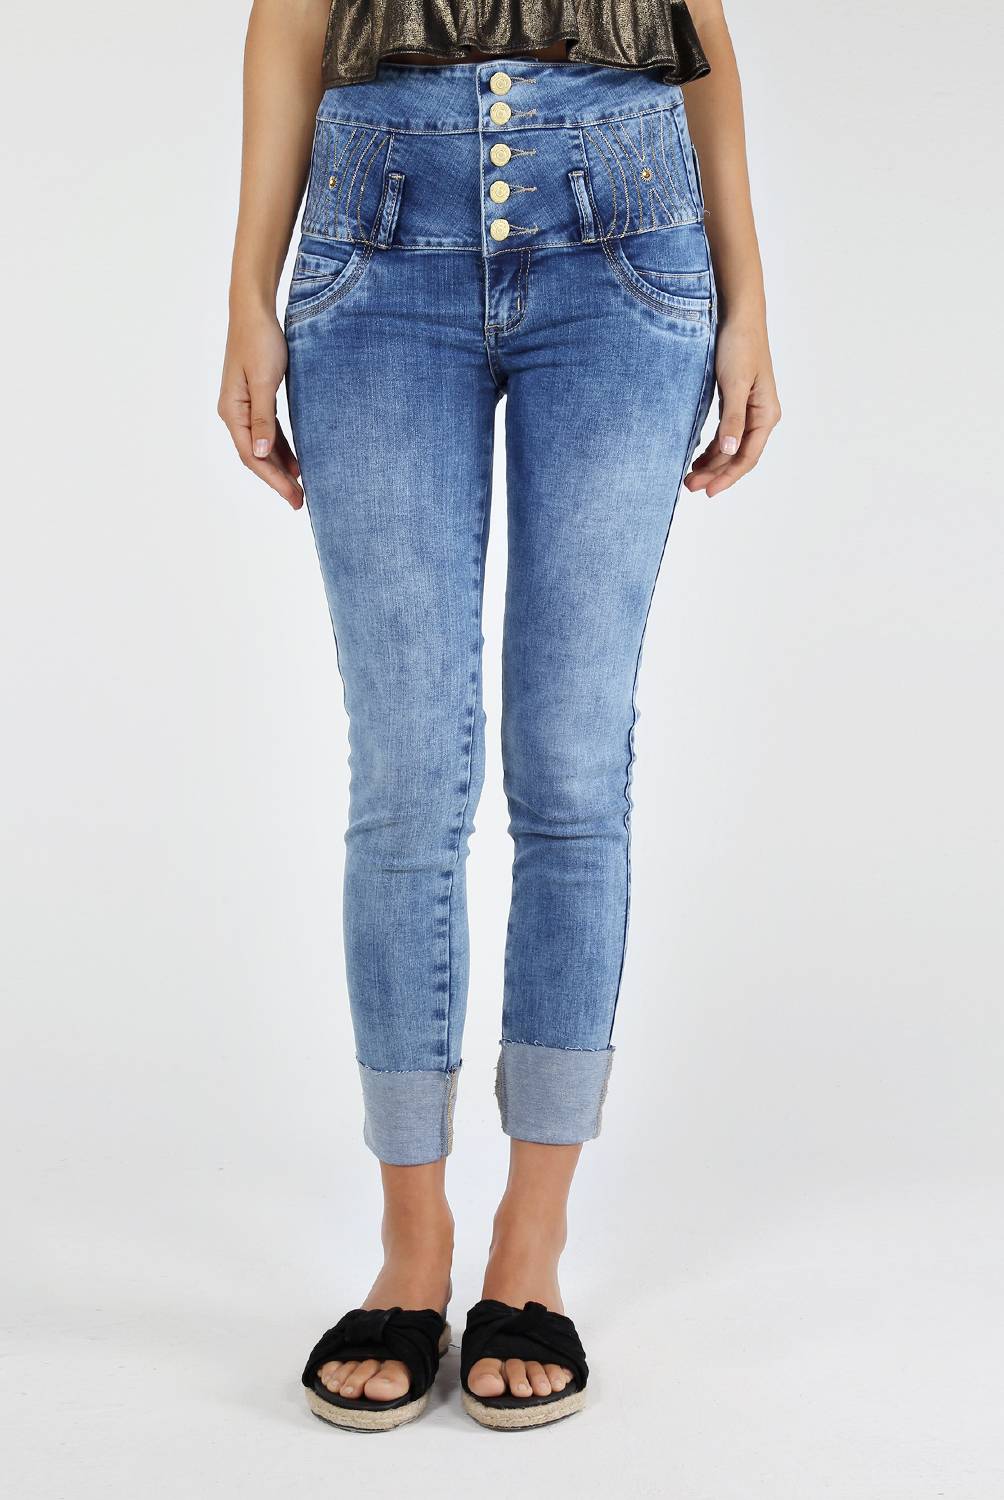 MOSSIMO - Jeans Pretina